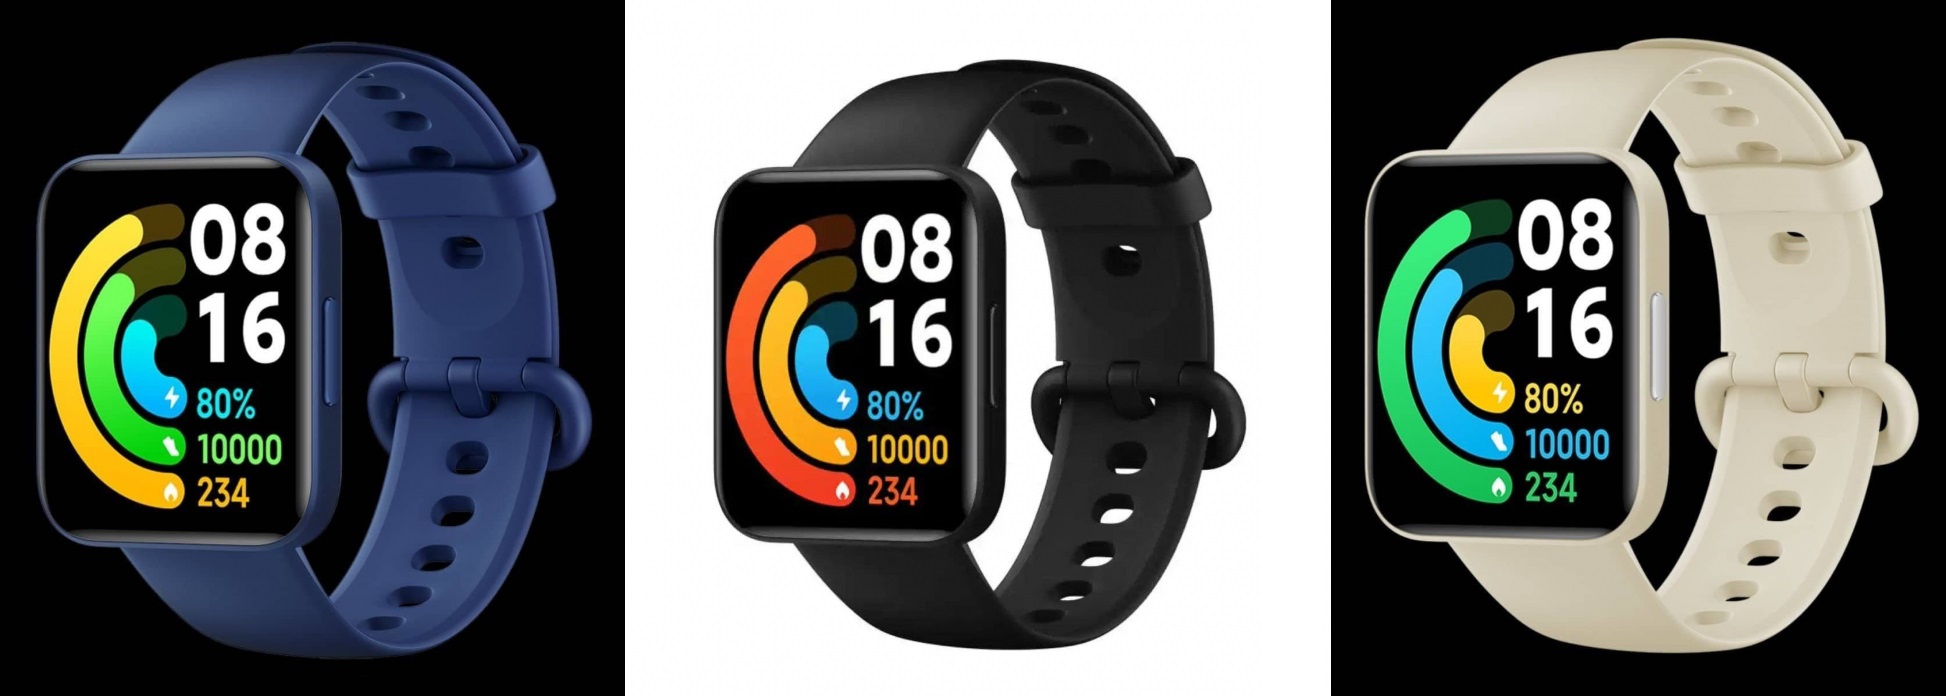 Xiaomi a publié des images de haute qualité de montres intelligentes Redmi Watch 2